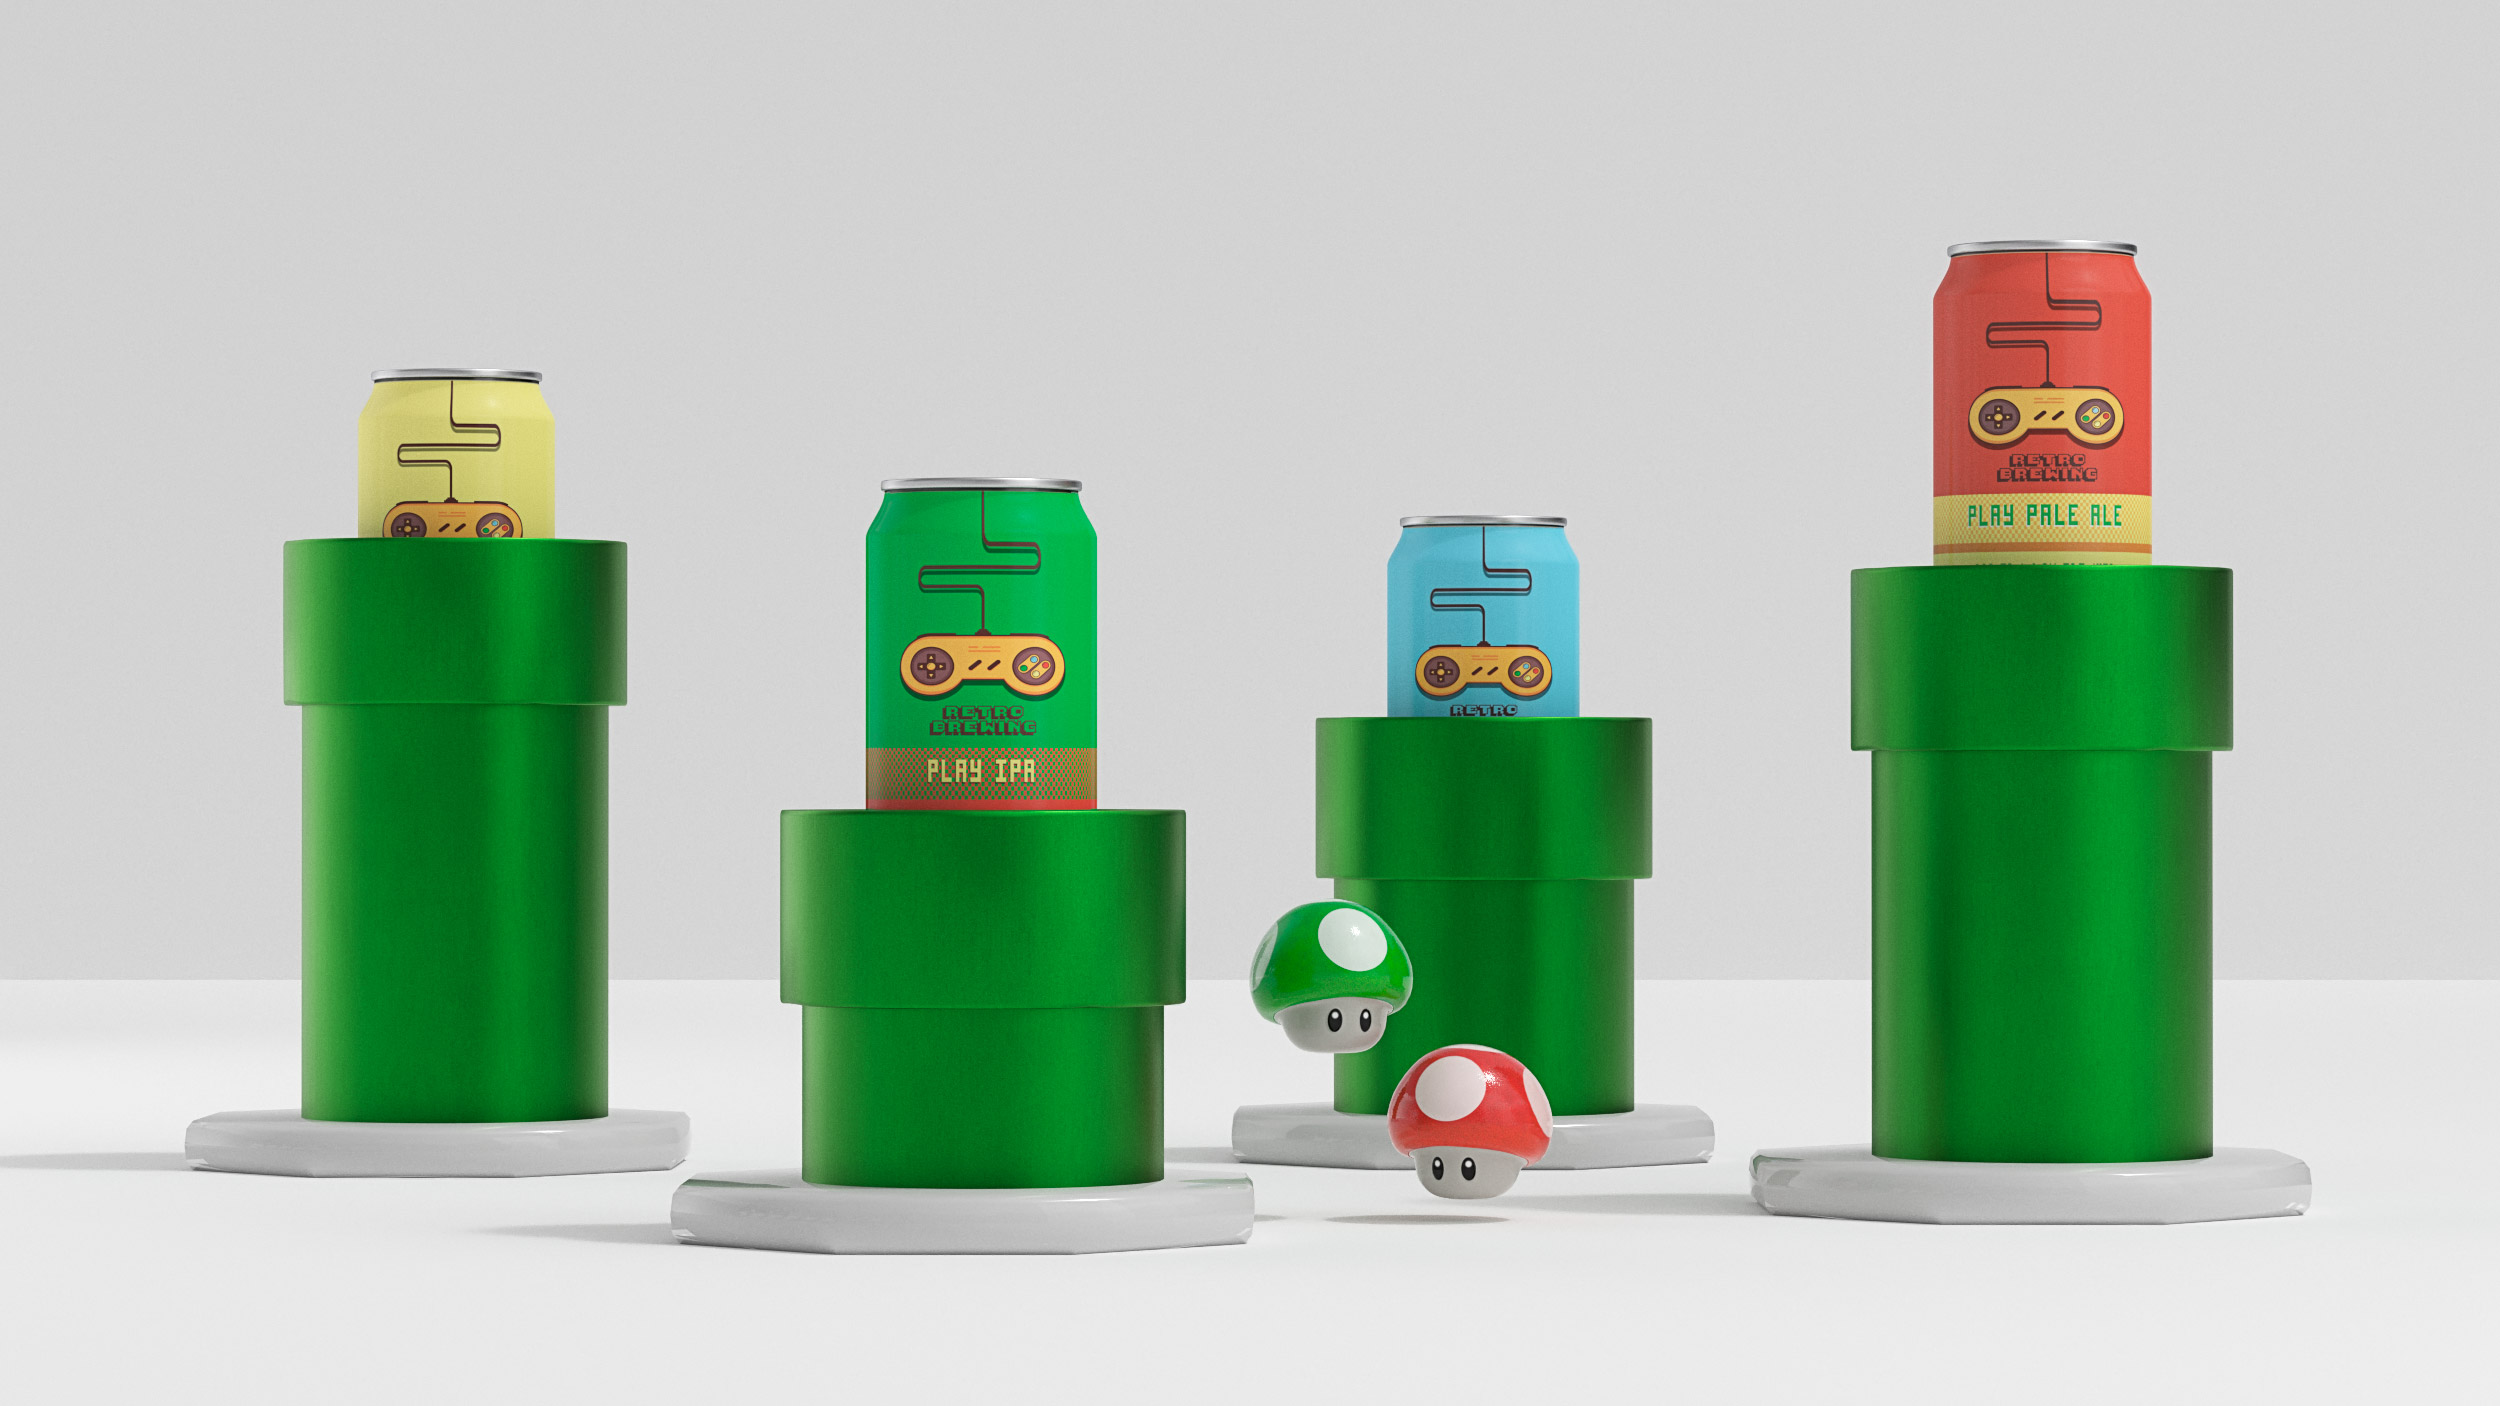 Presentation of Super Mario Bros. cans